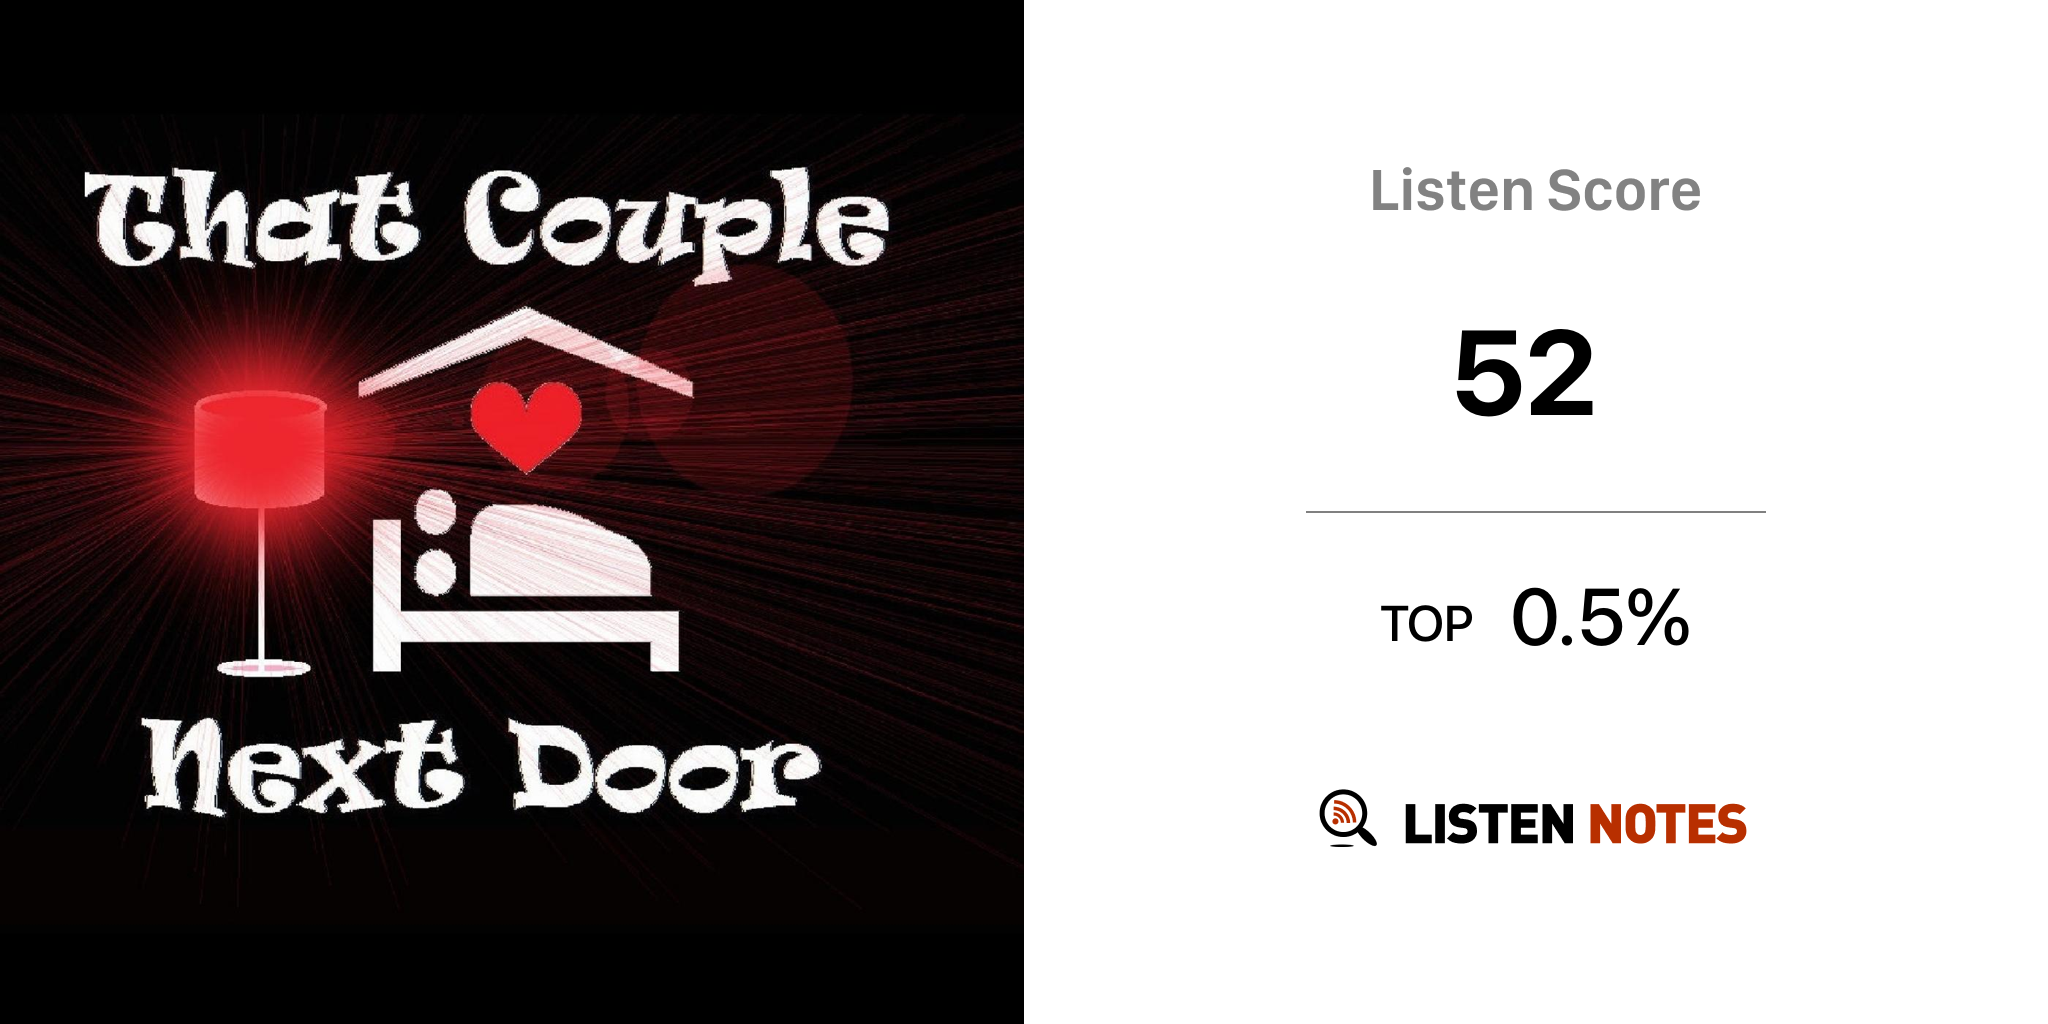 Podcast couple next door Best 35